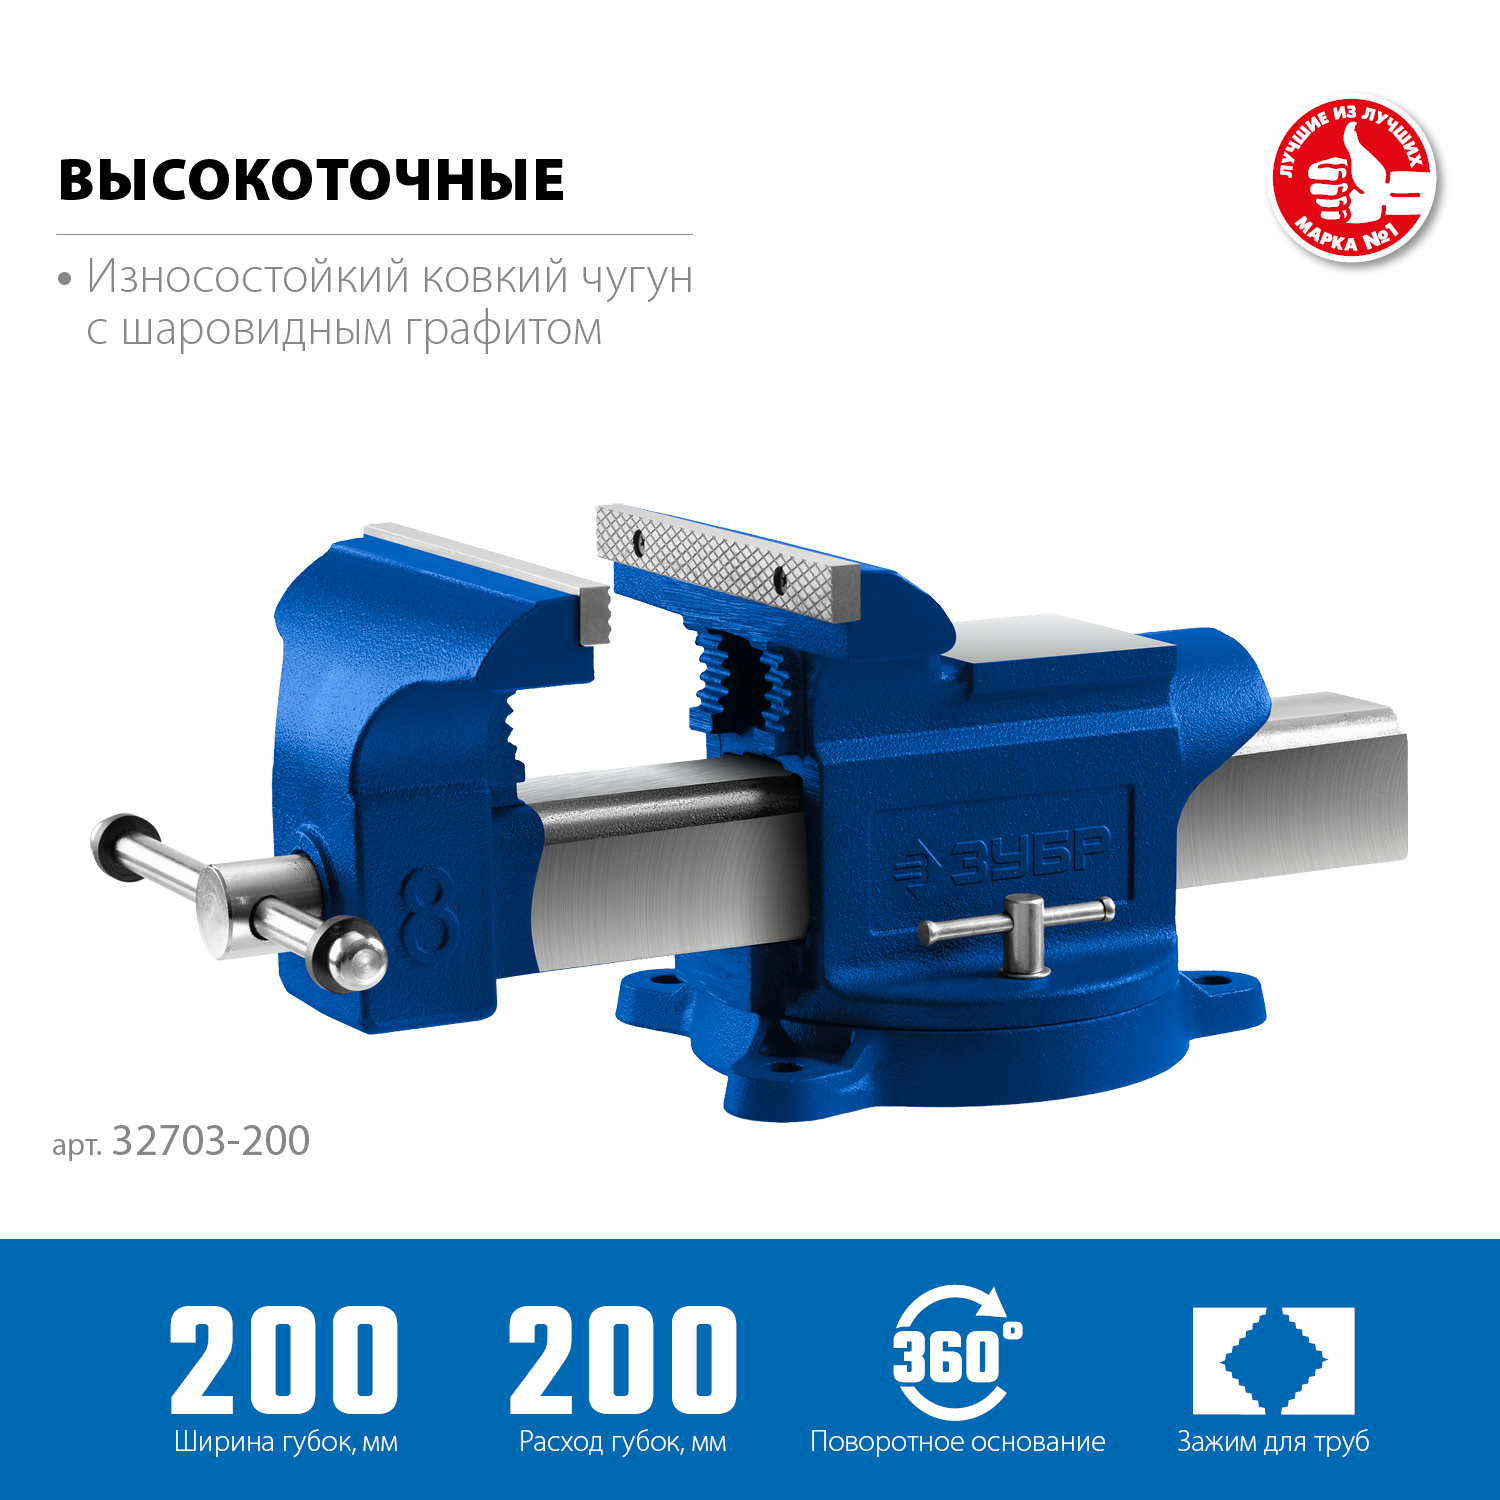 ЗУБР 200 мм, слесарные тиски, Профессионал (32703-200)